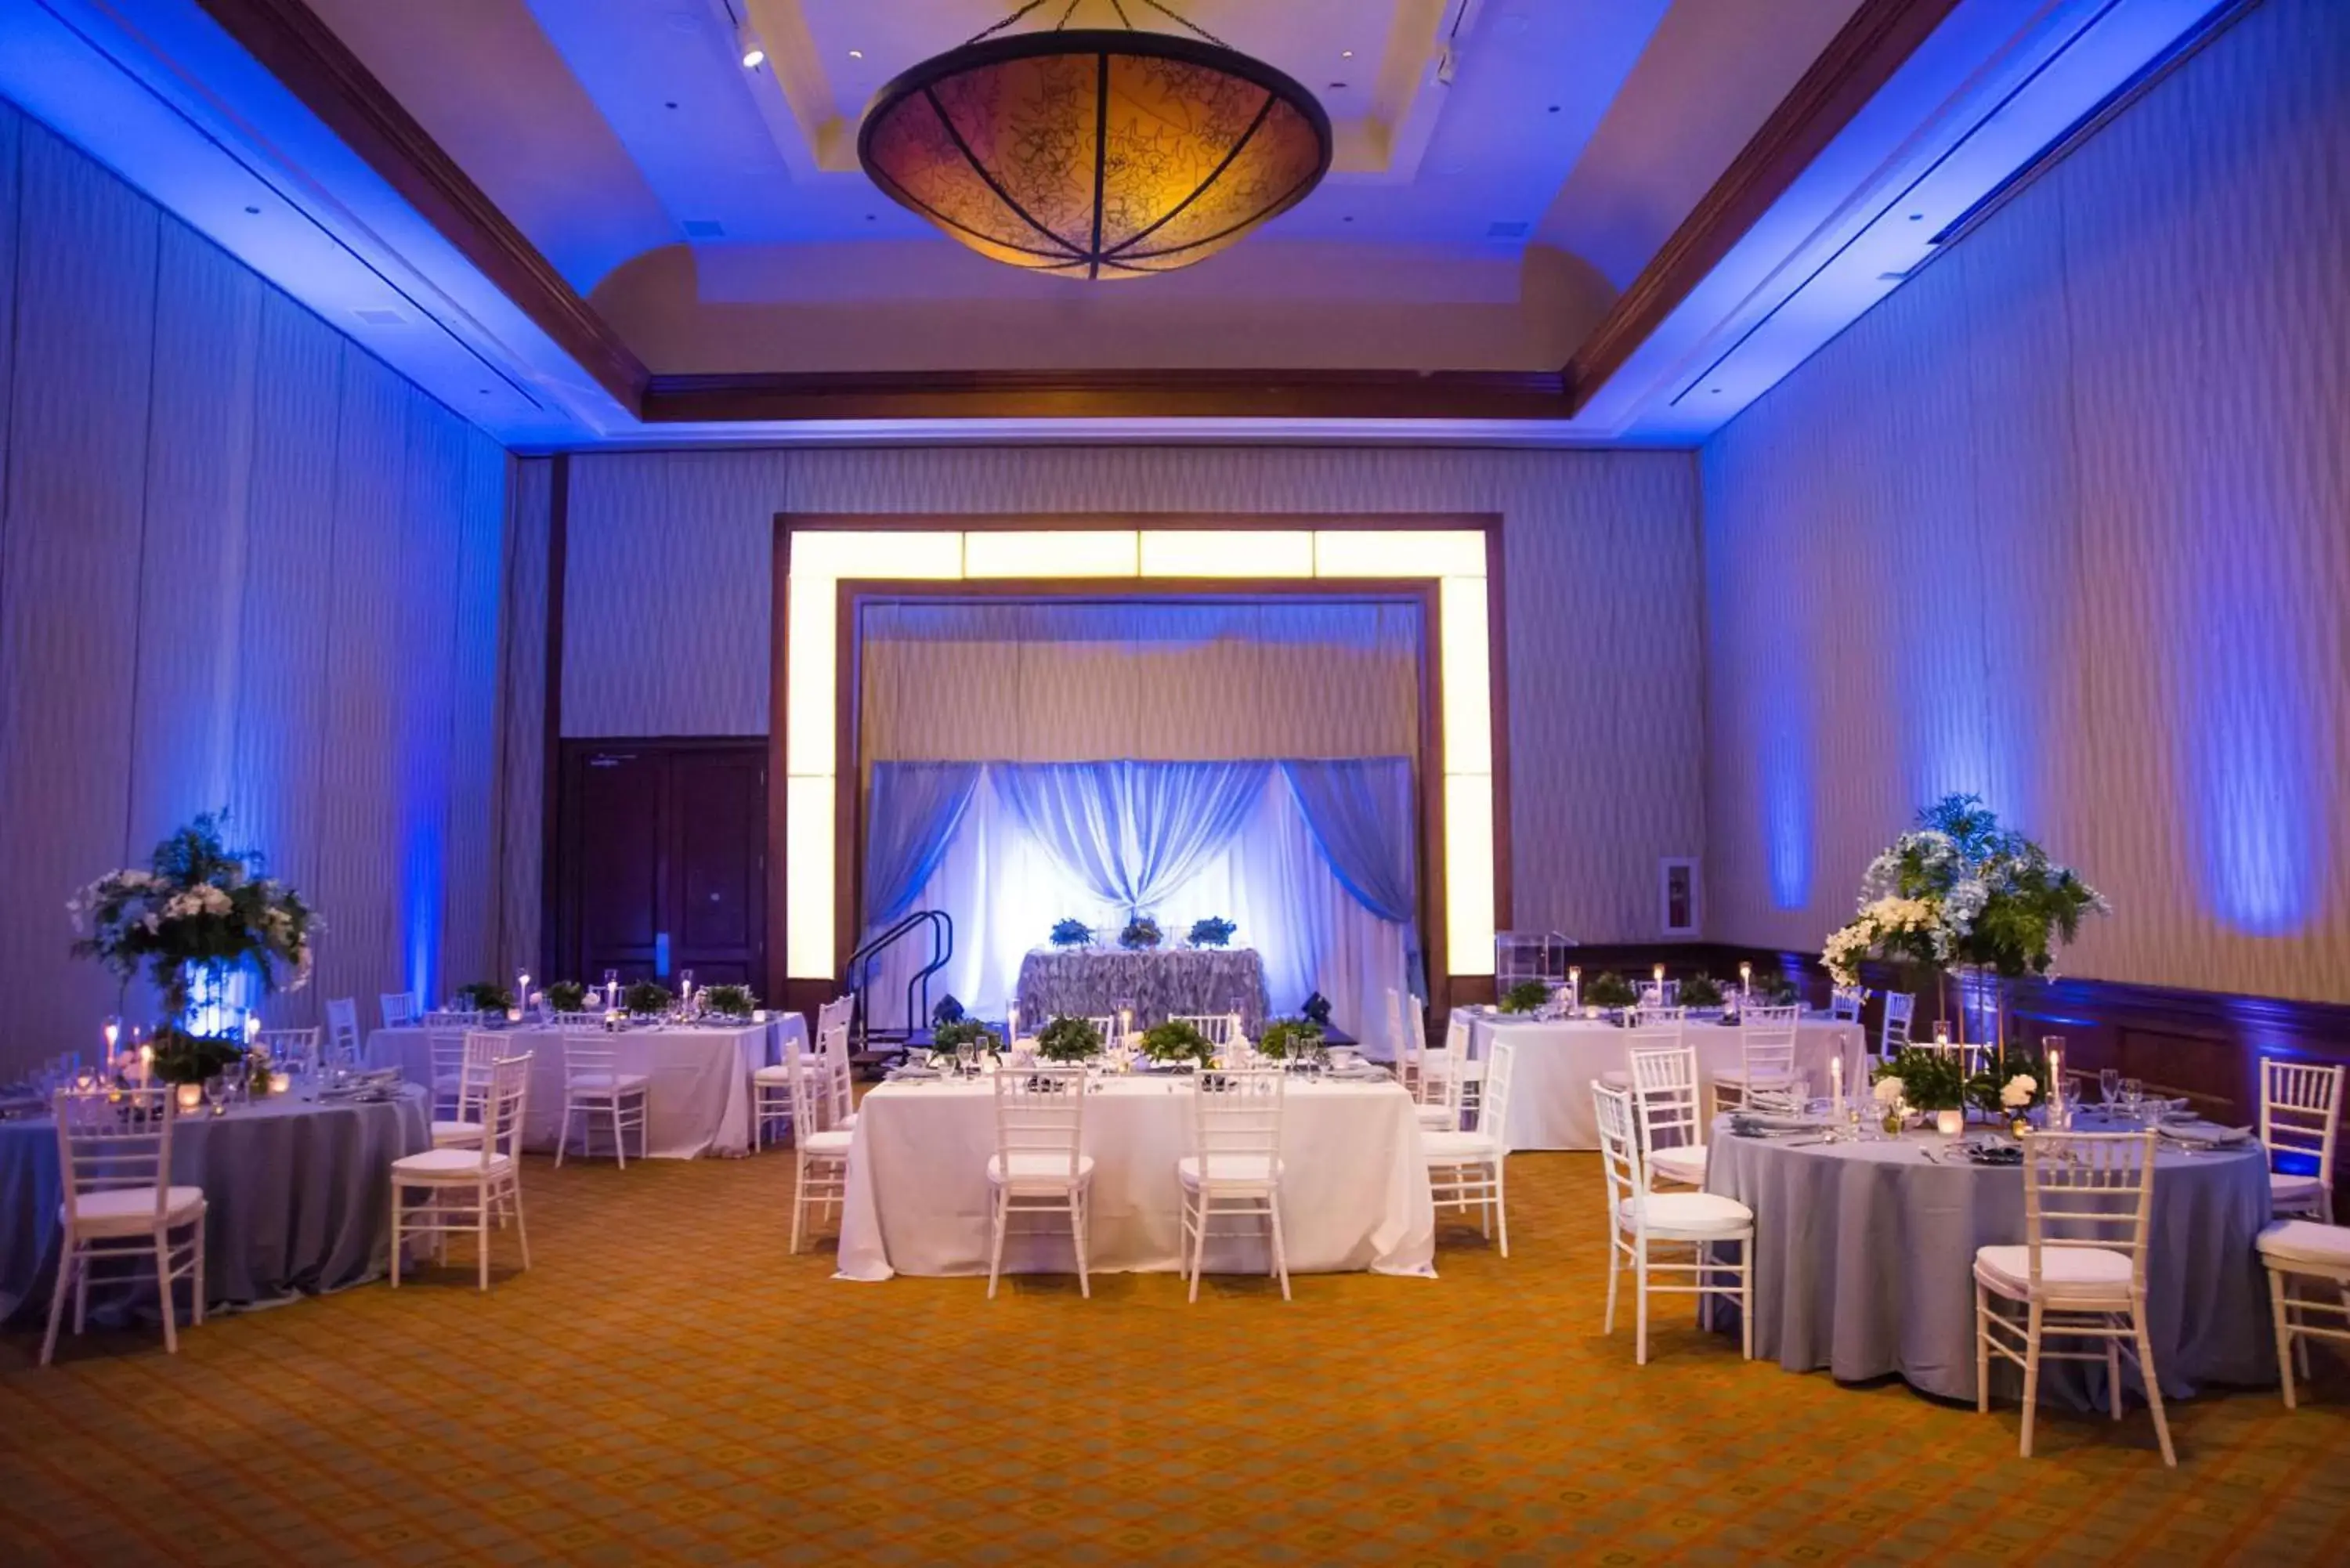 Meeting/conference room, Banquet Facilities in Hilton Barbados Resort